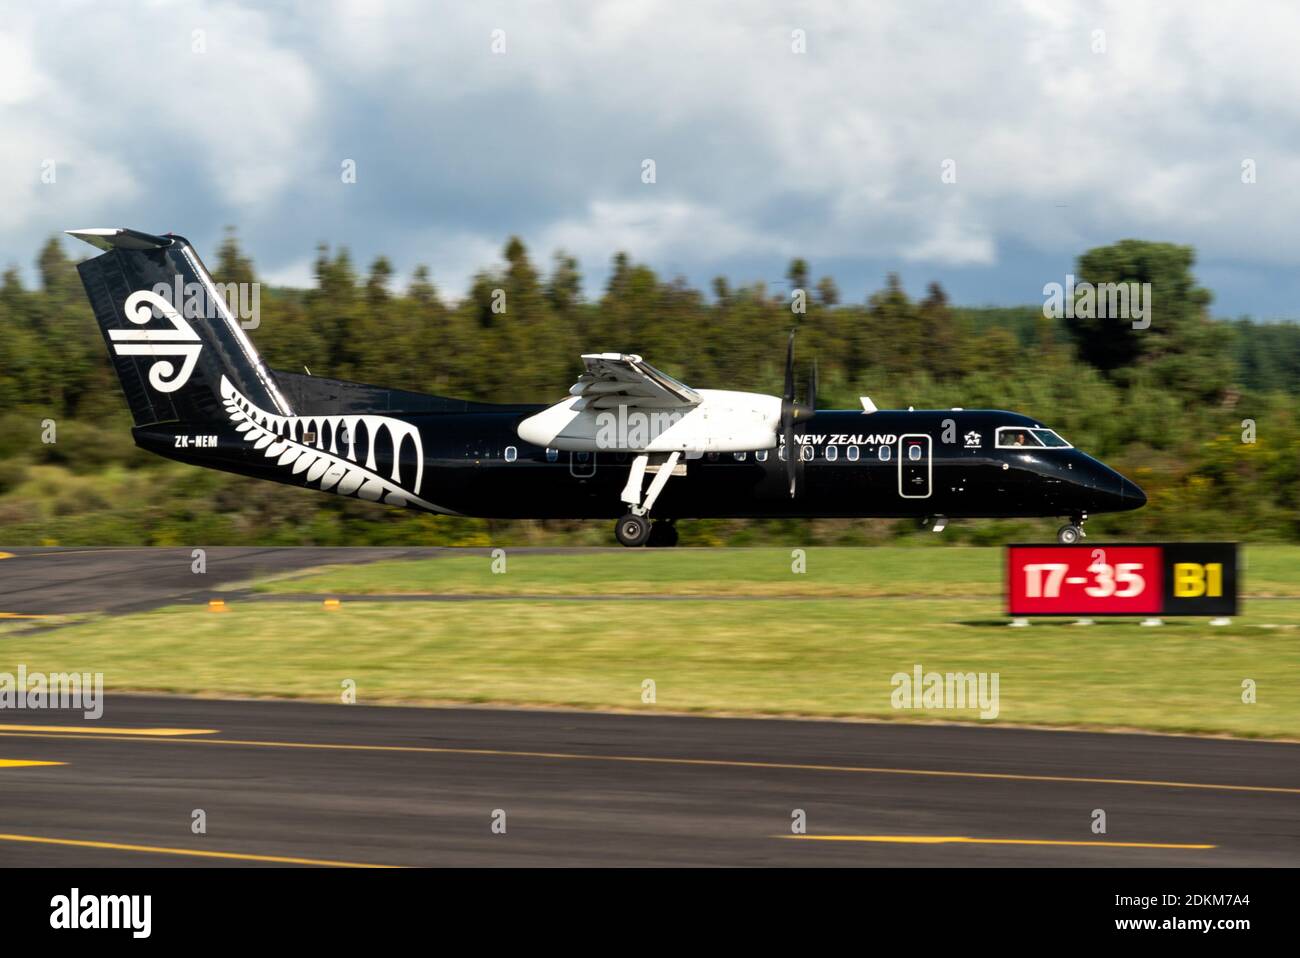 Eine Air New Zealand Bombardier Dash 8 Q300 Serie lackiert In allen schwarzen Farben beschleunigt der Start vom Flughafen Taupo Stockfoto